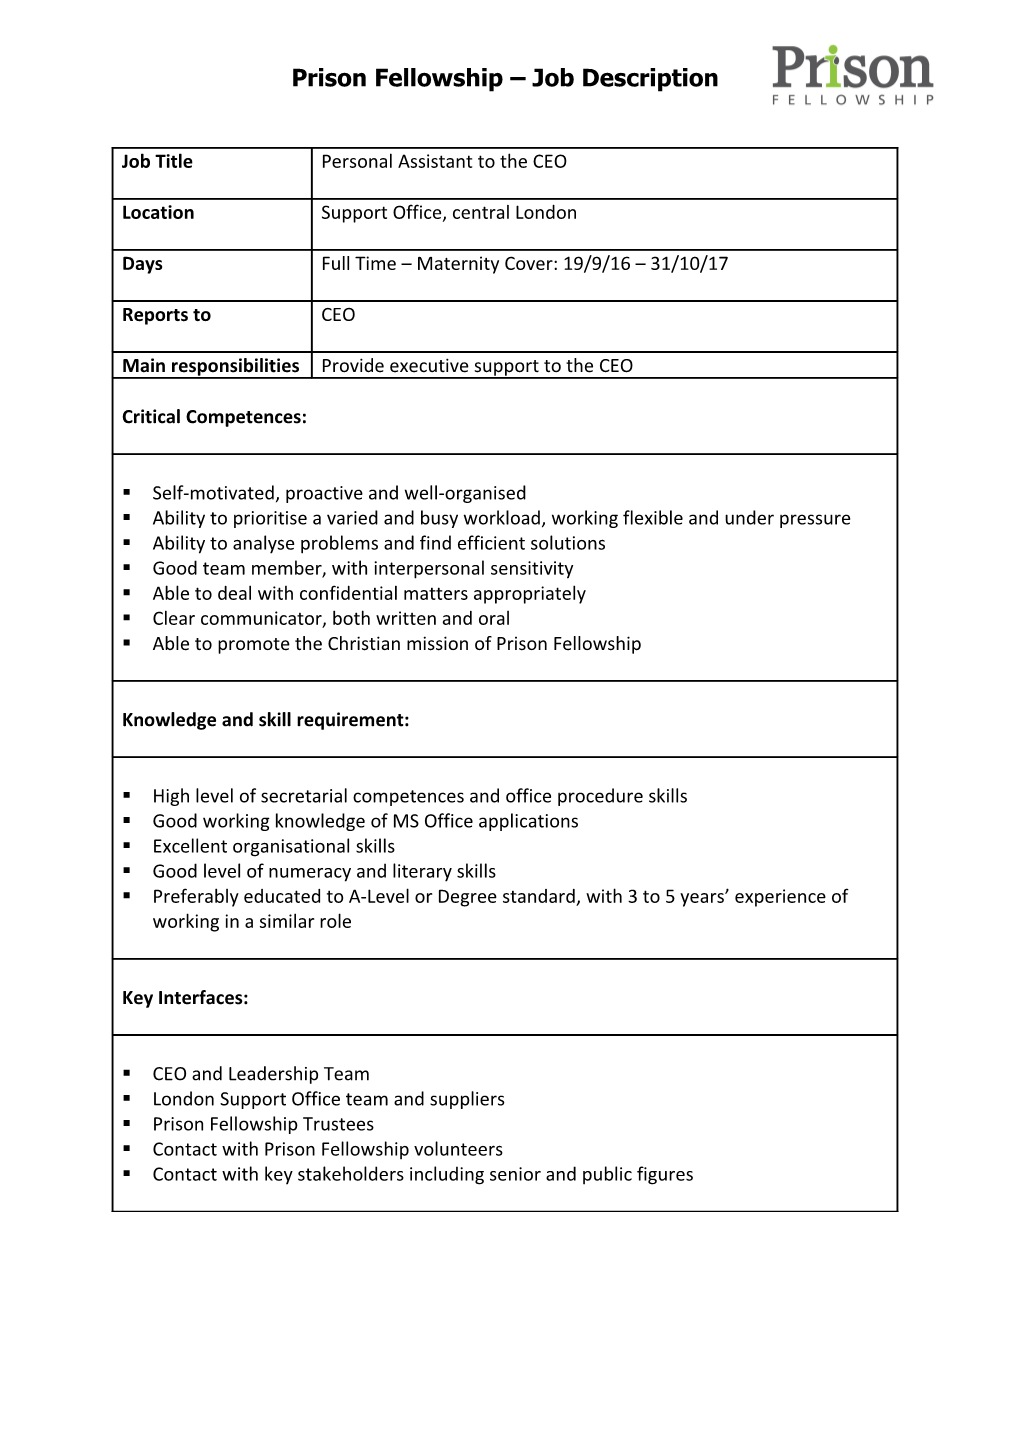 Prison Fellowship Job Description